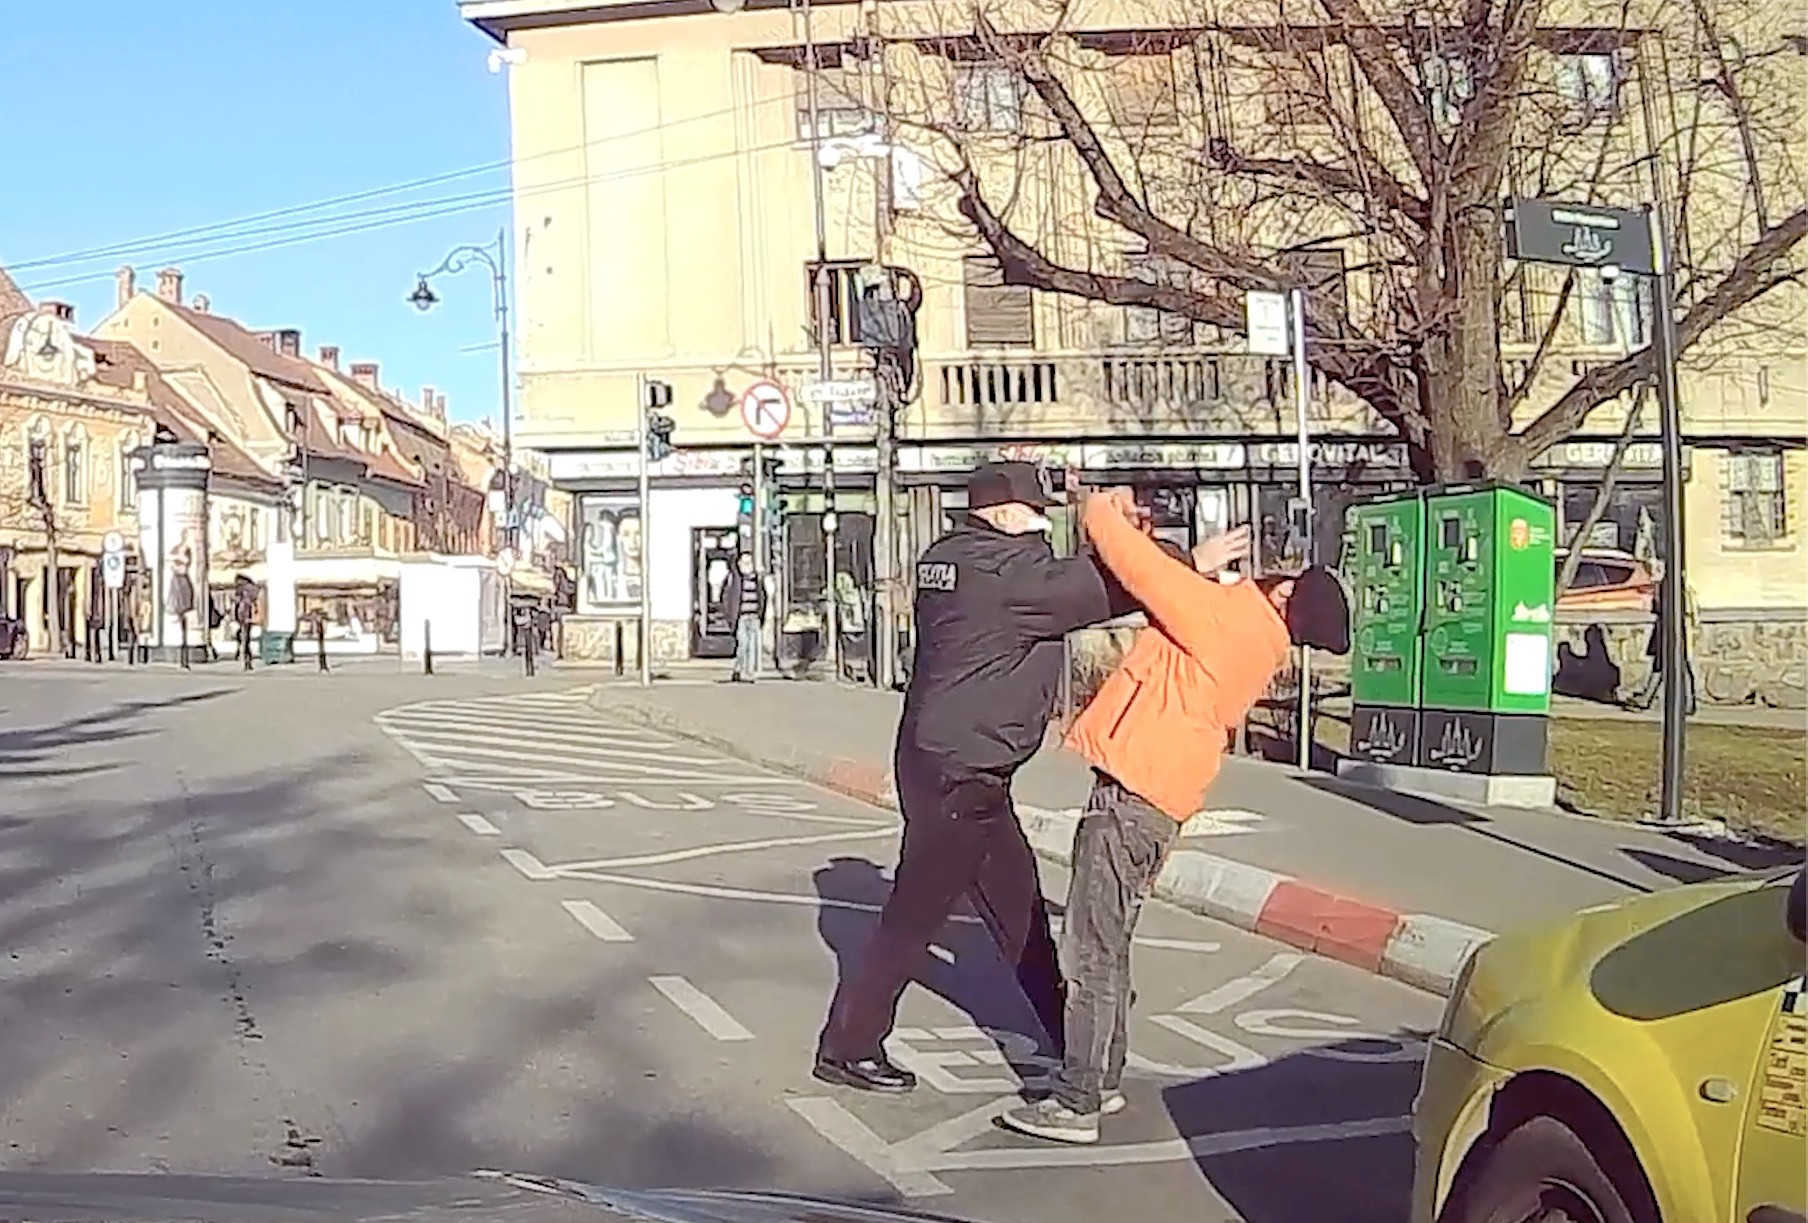 IMAGINI ȘOCANTE! Polițist local, filmat lovind un om al străzii. Unde s-a întâmplat totul! - VIDEO